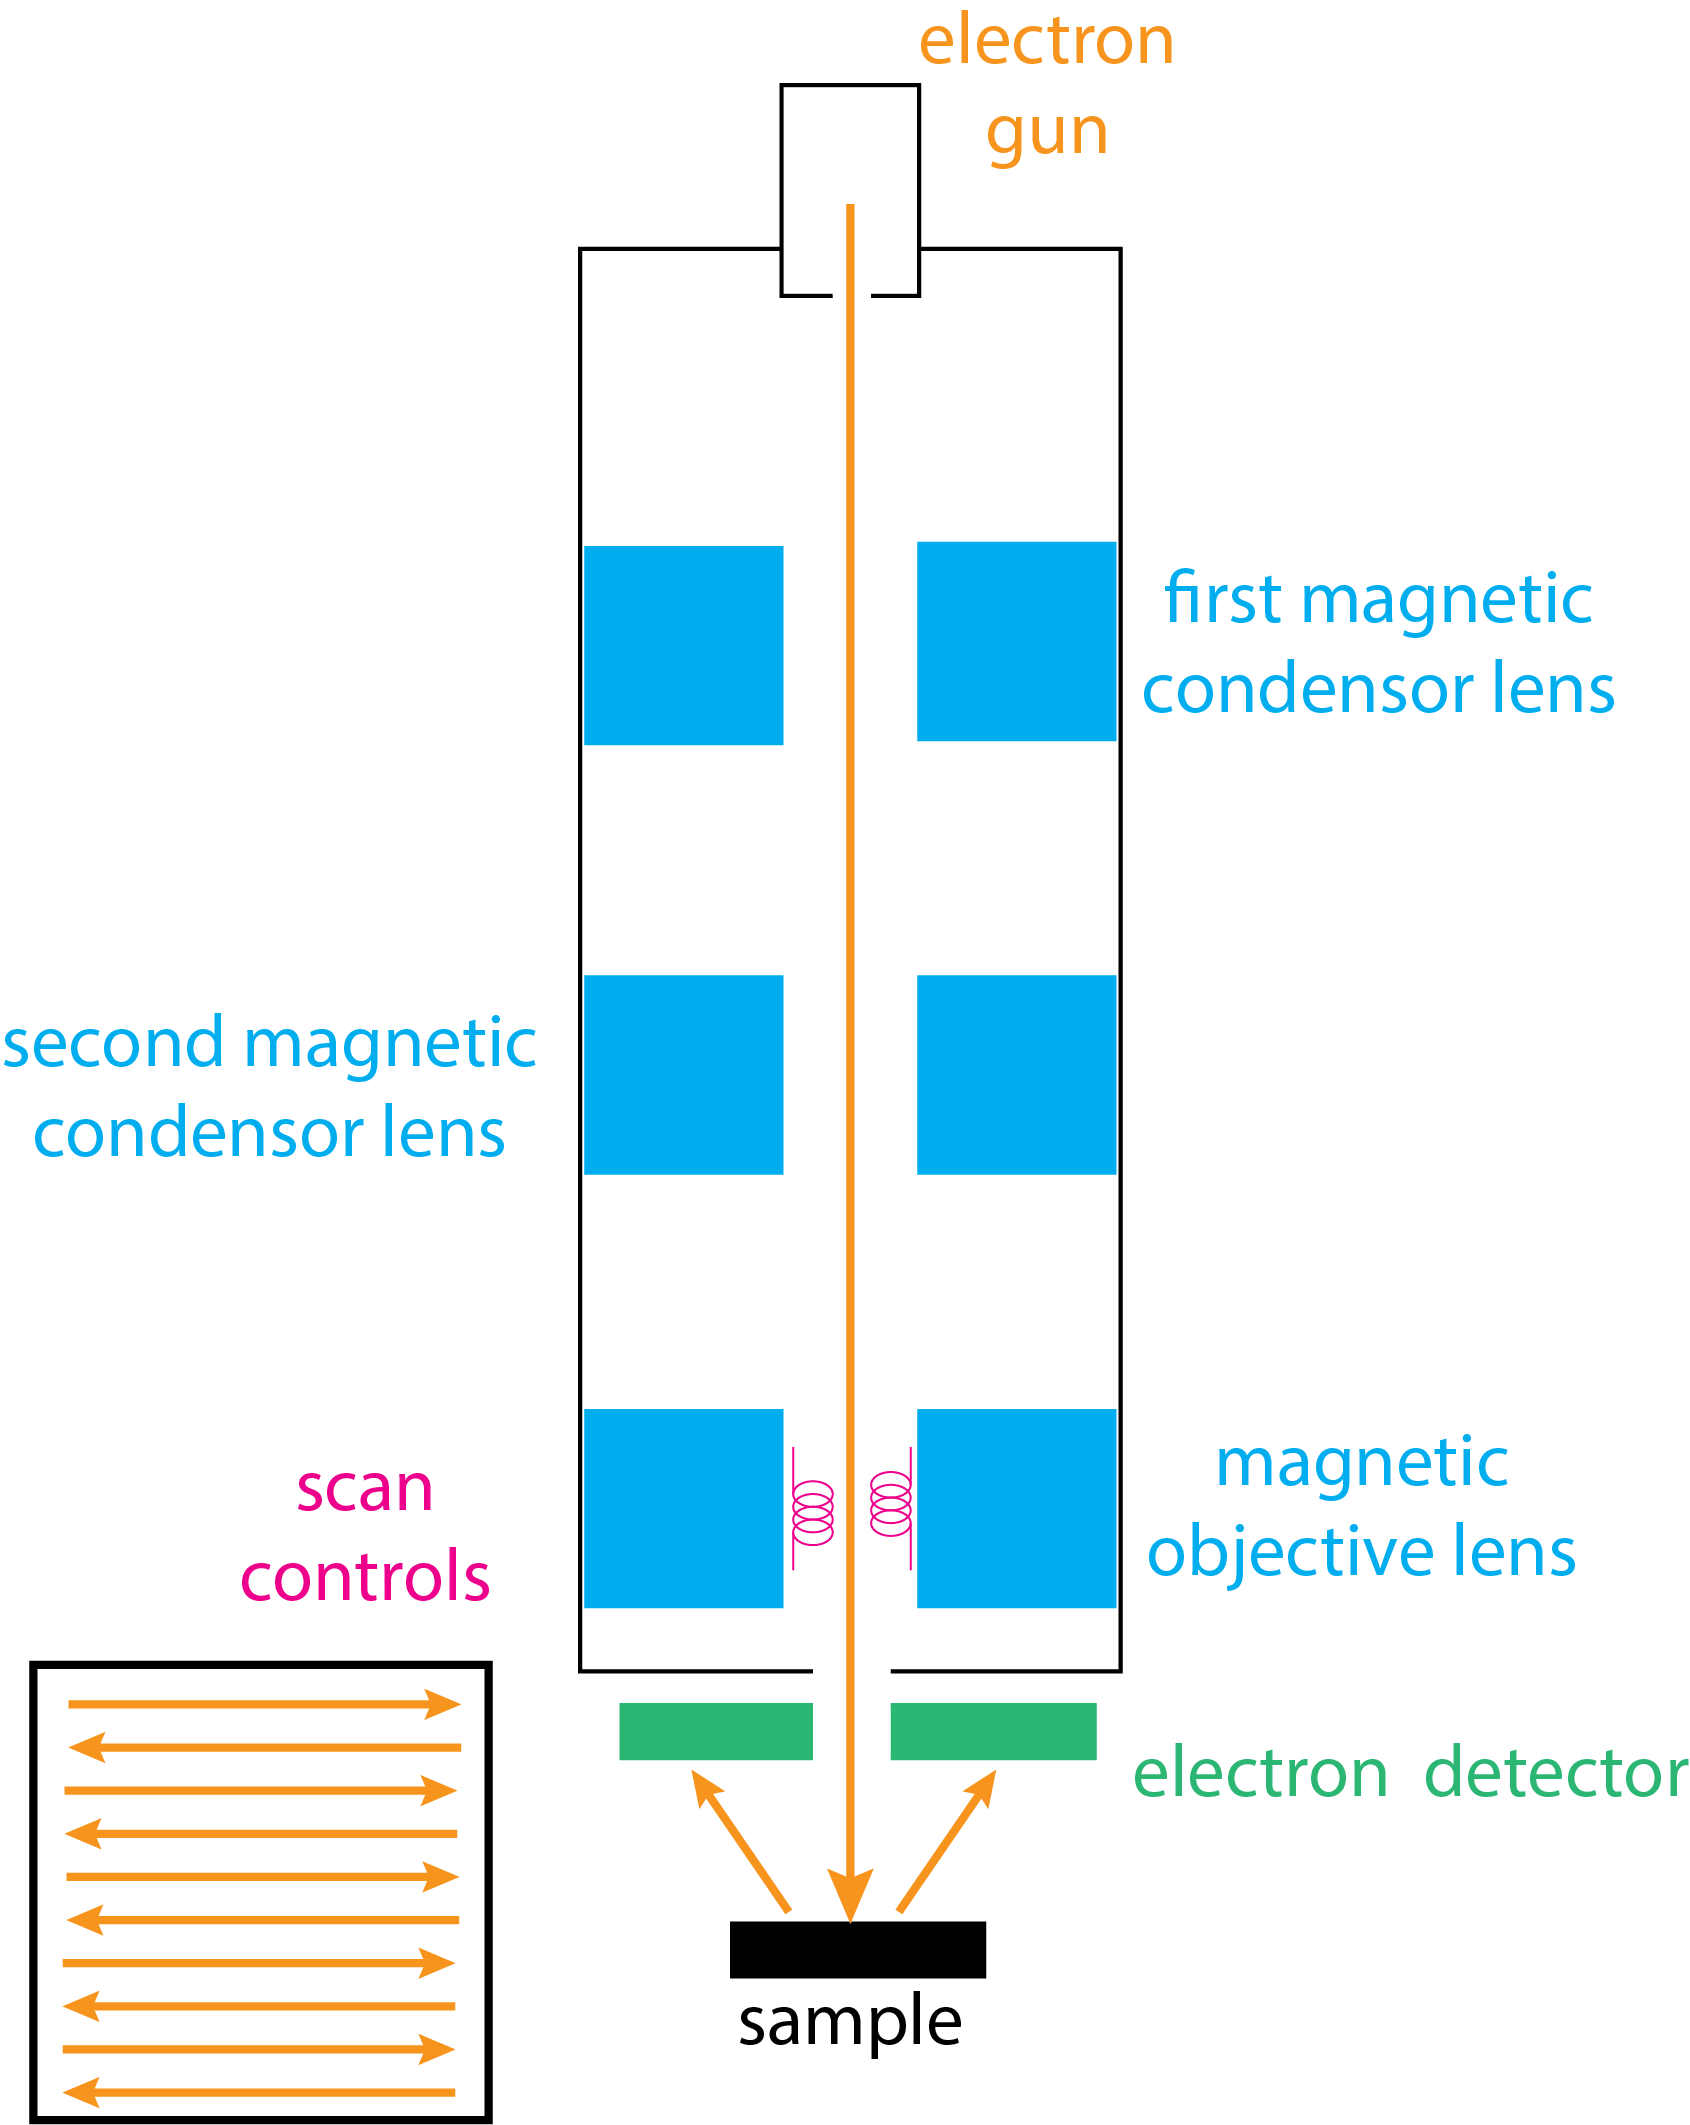 Diagrama esquemático de un instrumento para microscopía electrónica de barrido, que consiste en un cañón electrónico, un sistema de lentes magnéticas, un control de barrido y un detector. La inserción en la parte inferior izquierda muestra un patrón de trama en el que el haz de electrones se escanea hacia adelante y hacia atrás a través de la superficie de la muestra.